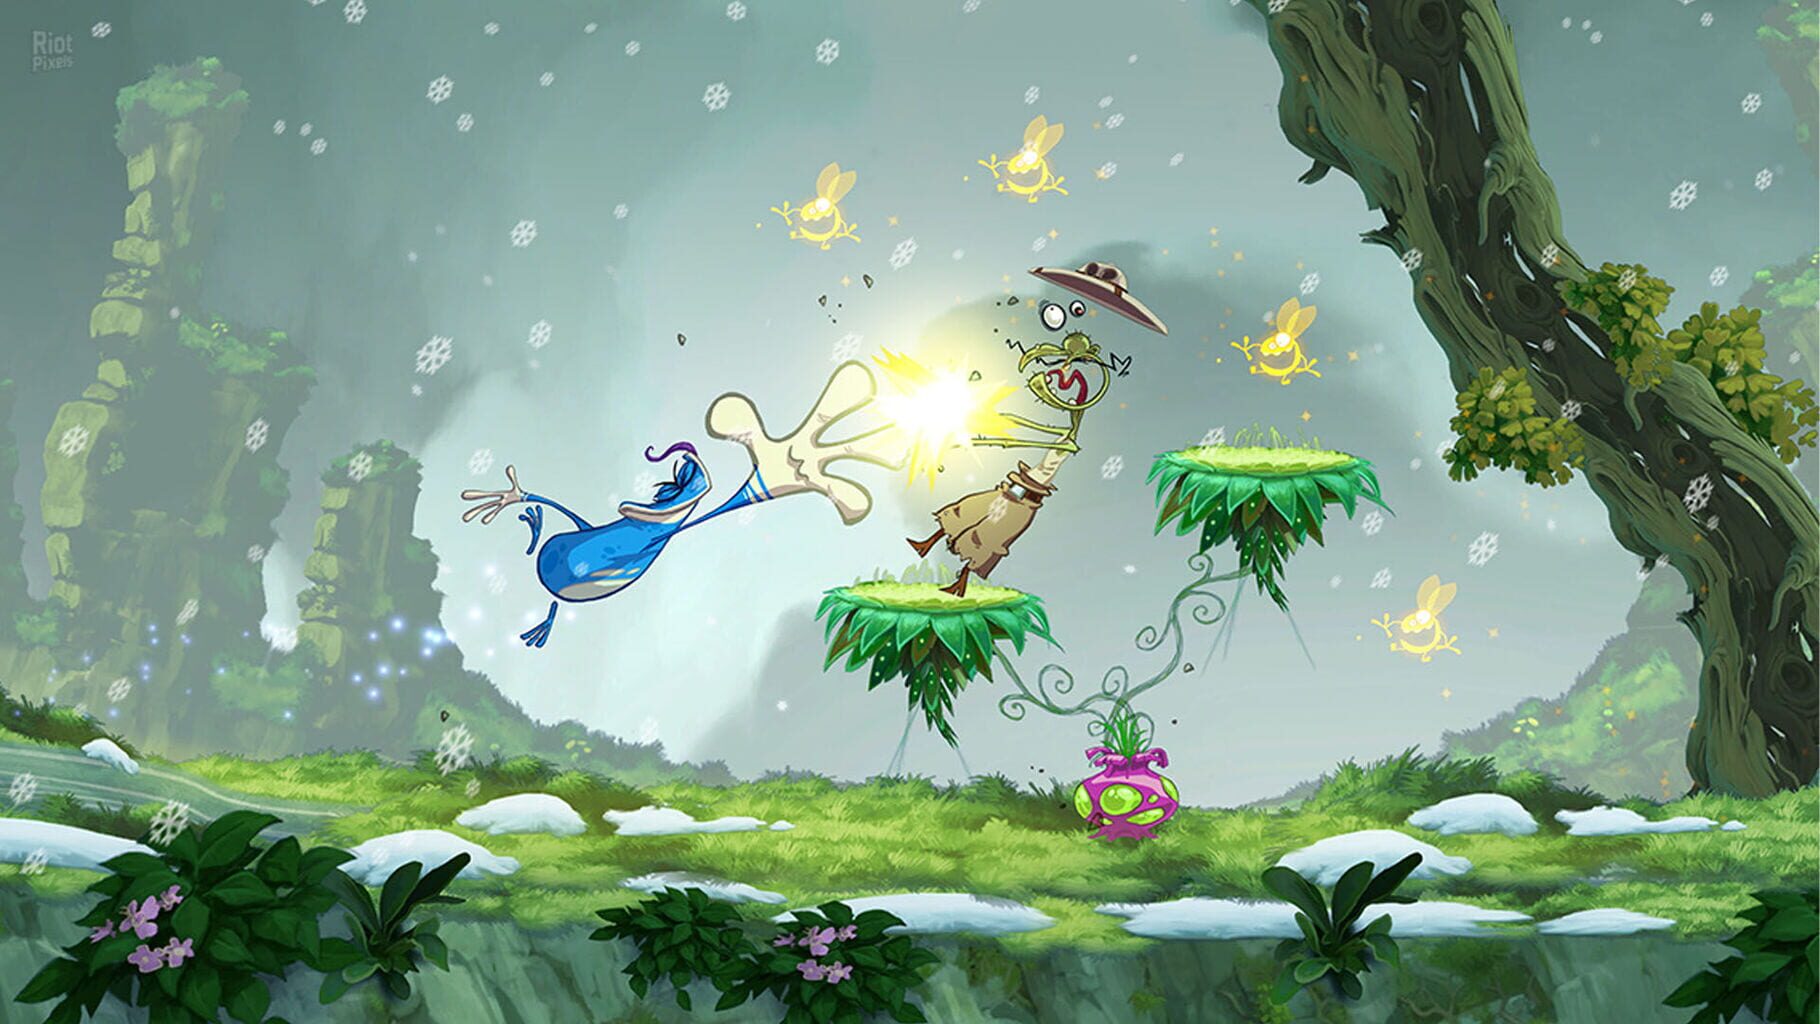 Rayman Jungle Run screenshots